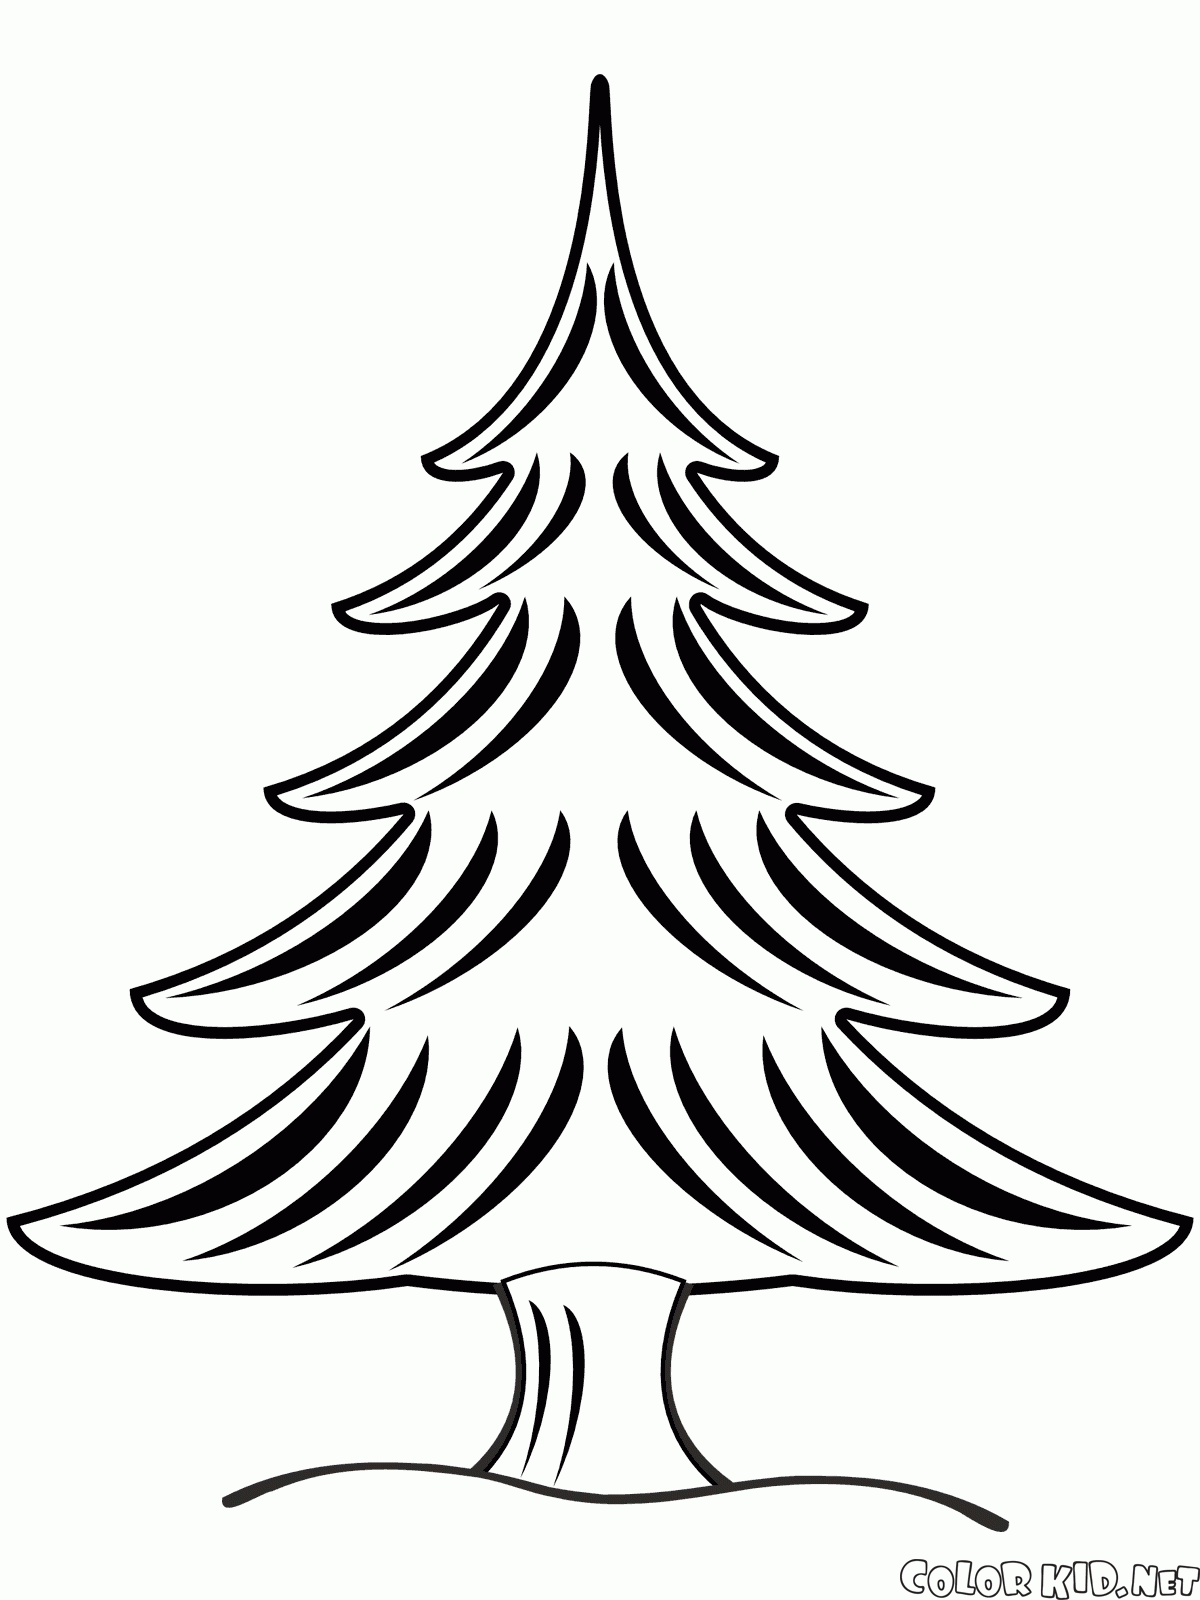 Dibujo para colorear - Árbol de Navidad en invierno